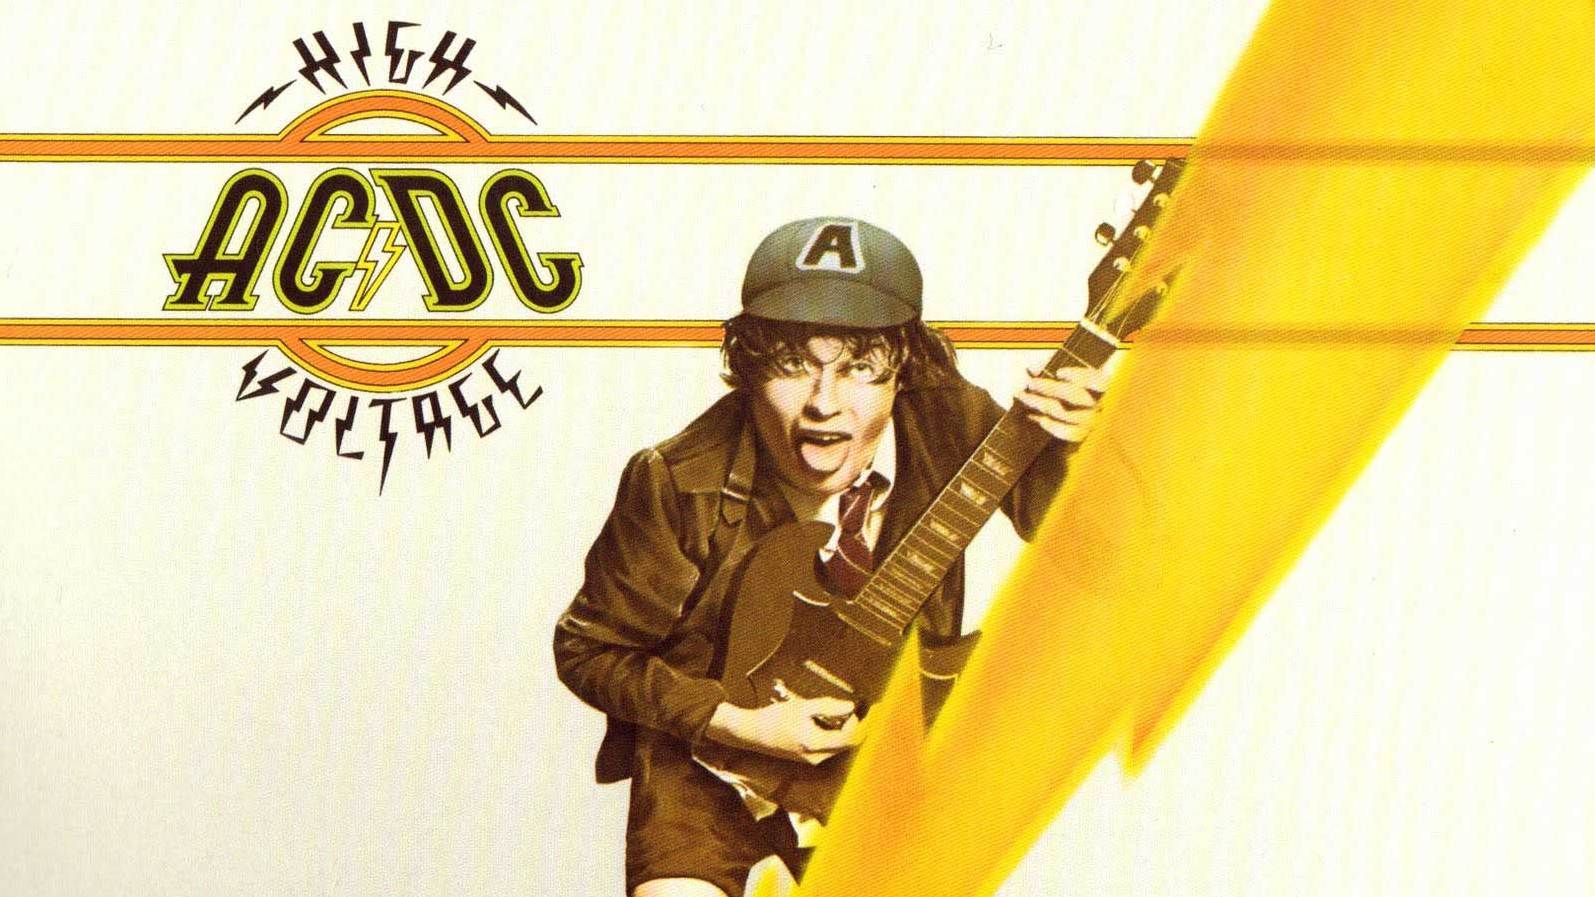 High voltage ac dc. AC DC High Voltage 1975. AC DC 1976. Voltage AC DC обложка. AC DC High Voltage альбом.